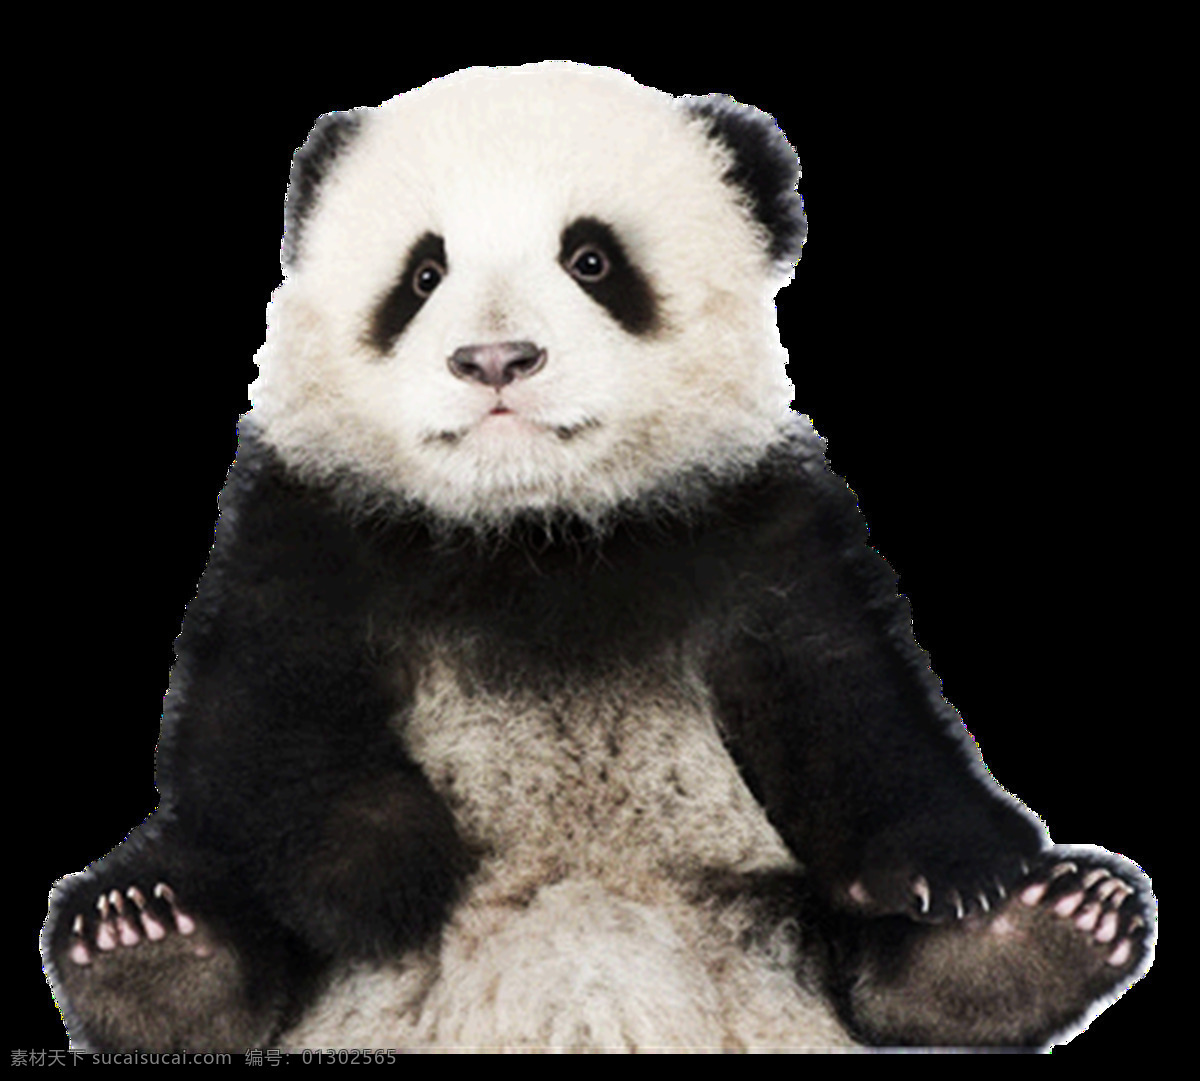 熊猫图片 熊猫 小熊猫 大熊猫 png图 透明图 免扣图 透明背景 透明底 抠图 生物世界 野生动物